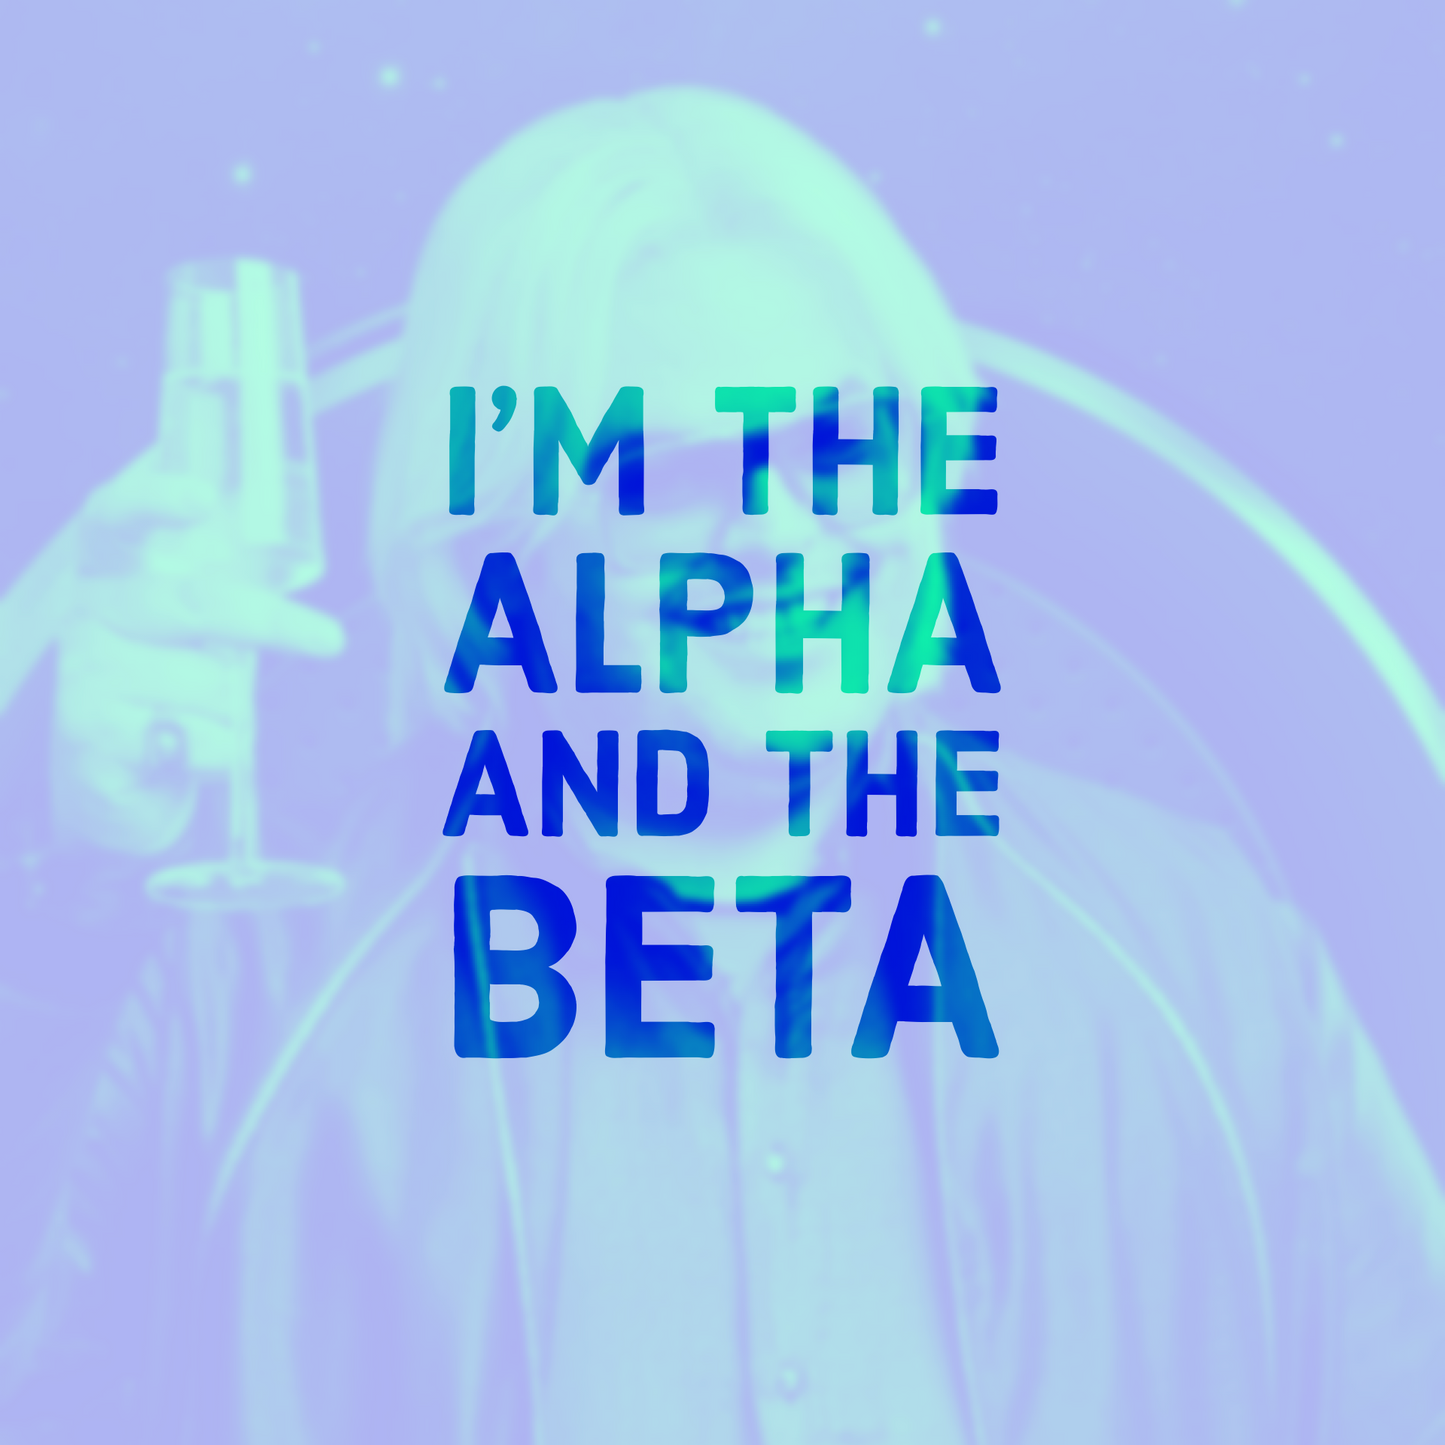 I’m the alpha & the beta